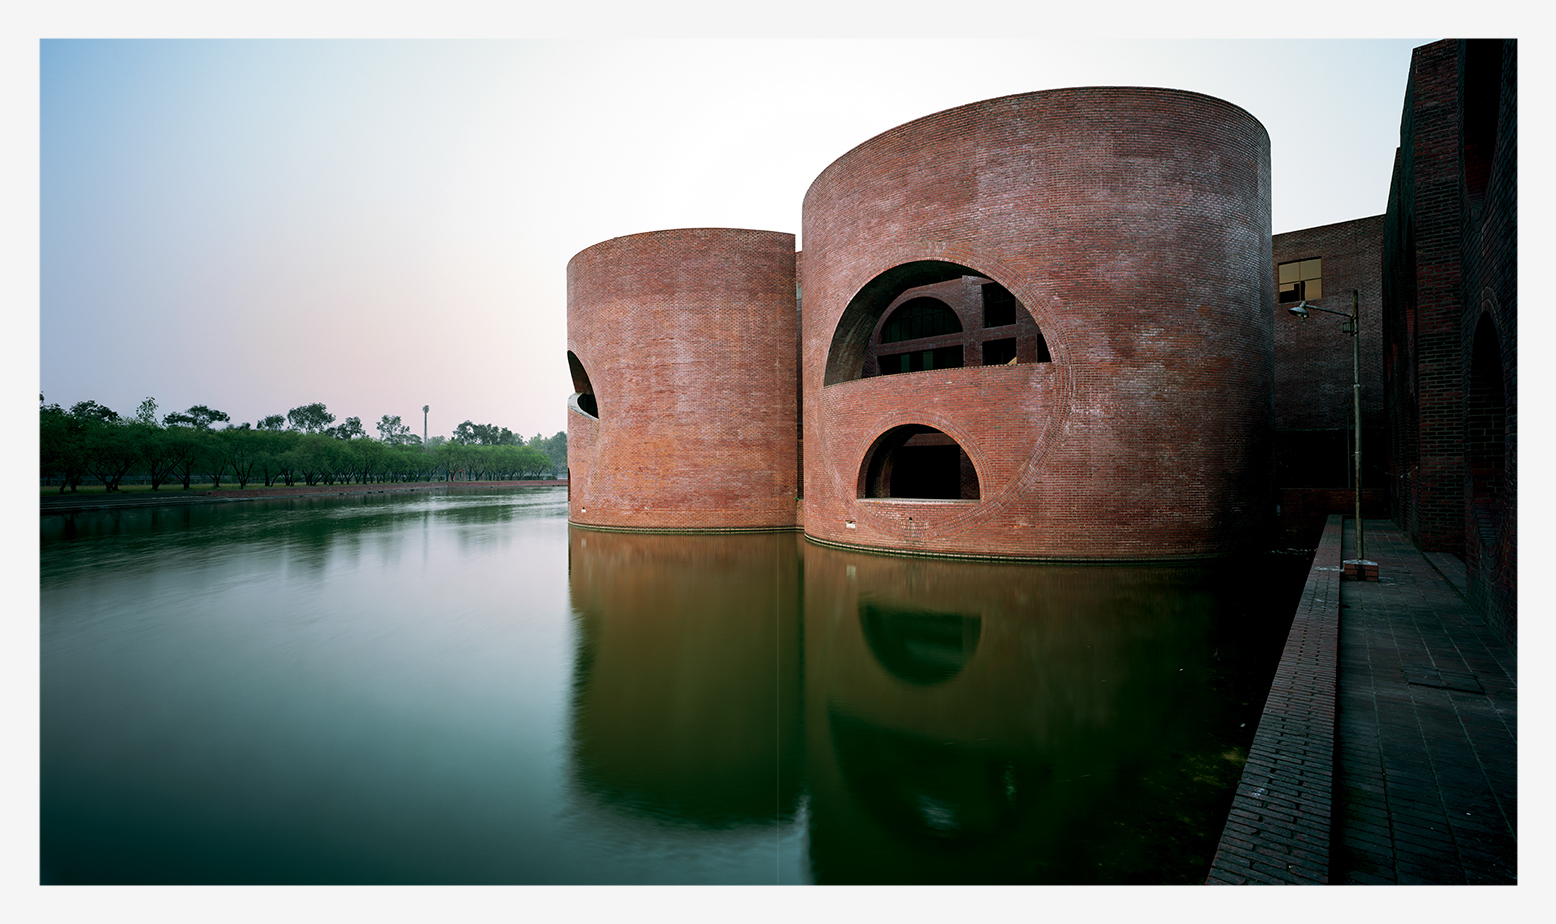   Louis Kahn Dhaka    For press or purchase inquiries email  info@raymondmeier.com   